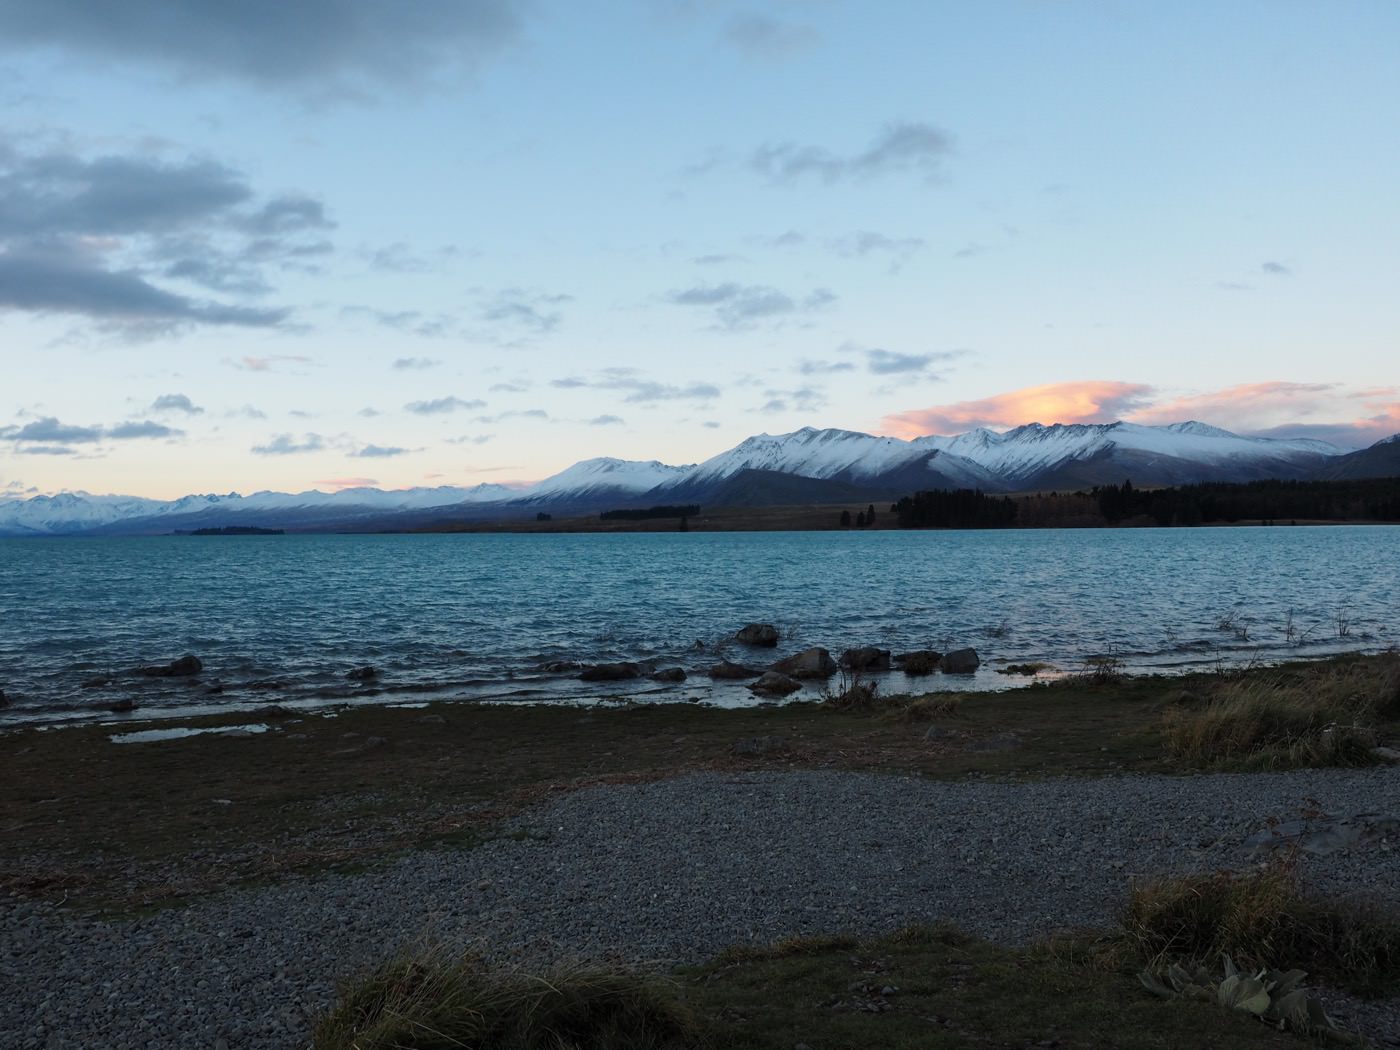 紐西蘭南島景點 Lake Tekapo 蒂卡波湖牧羊人小教堂的日與夜 - 一口冒險 Bitesized Adventure